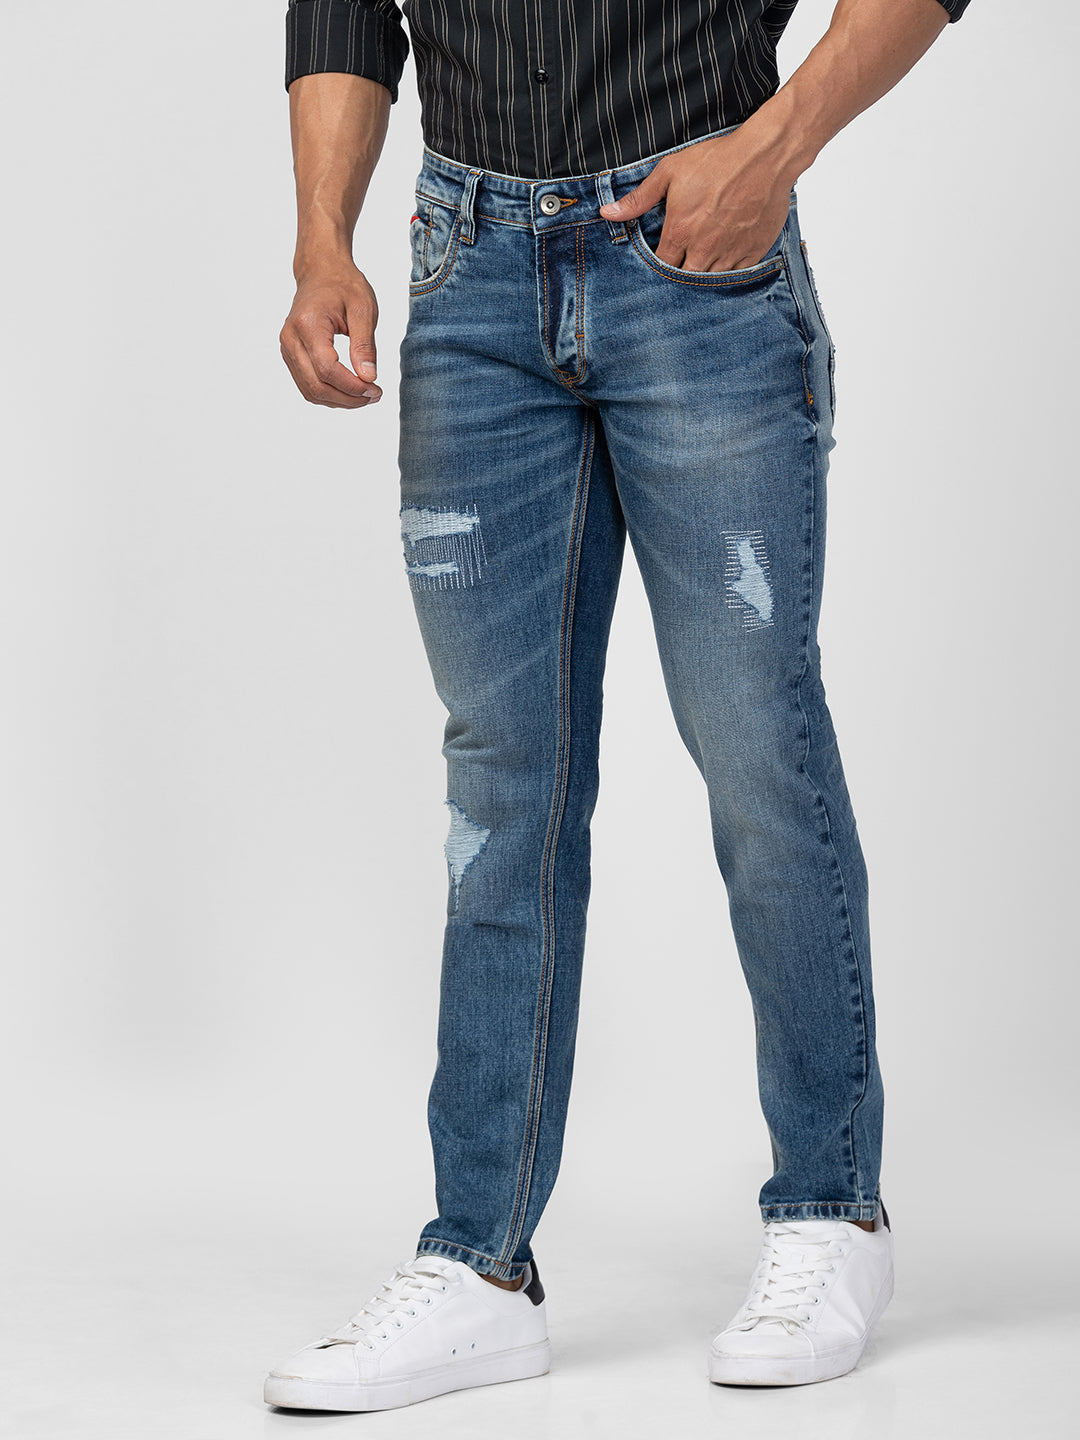 Spykar Men Vintage Blue Cotton Slim Fit Regular Length Jeans (Skinny )